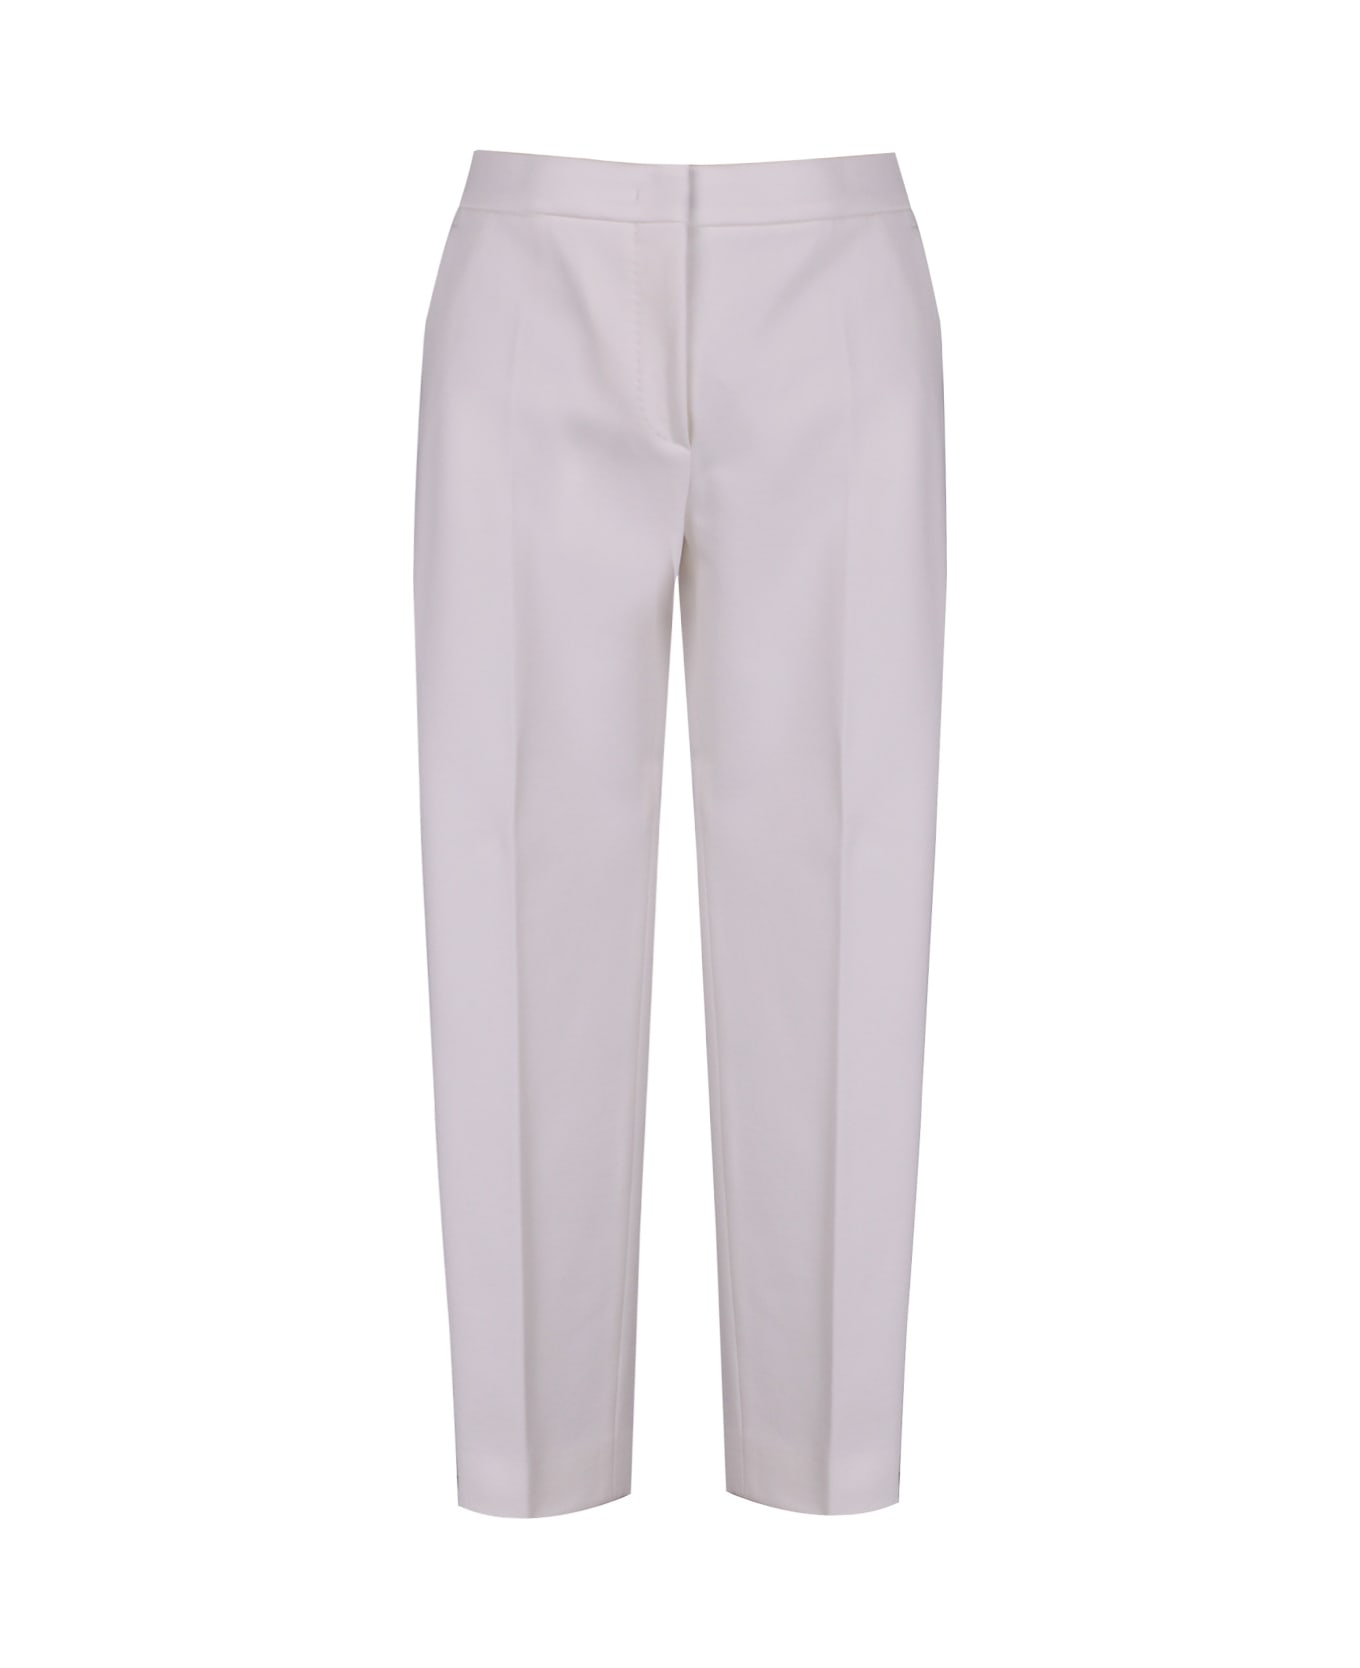 Max Mara Pegno Jersey Trousers - White